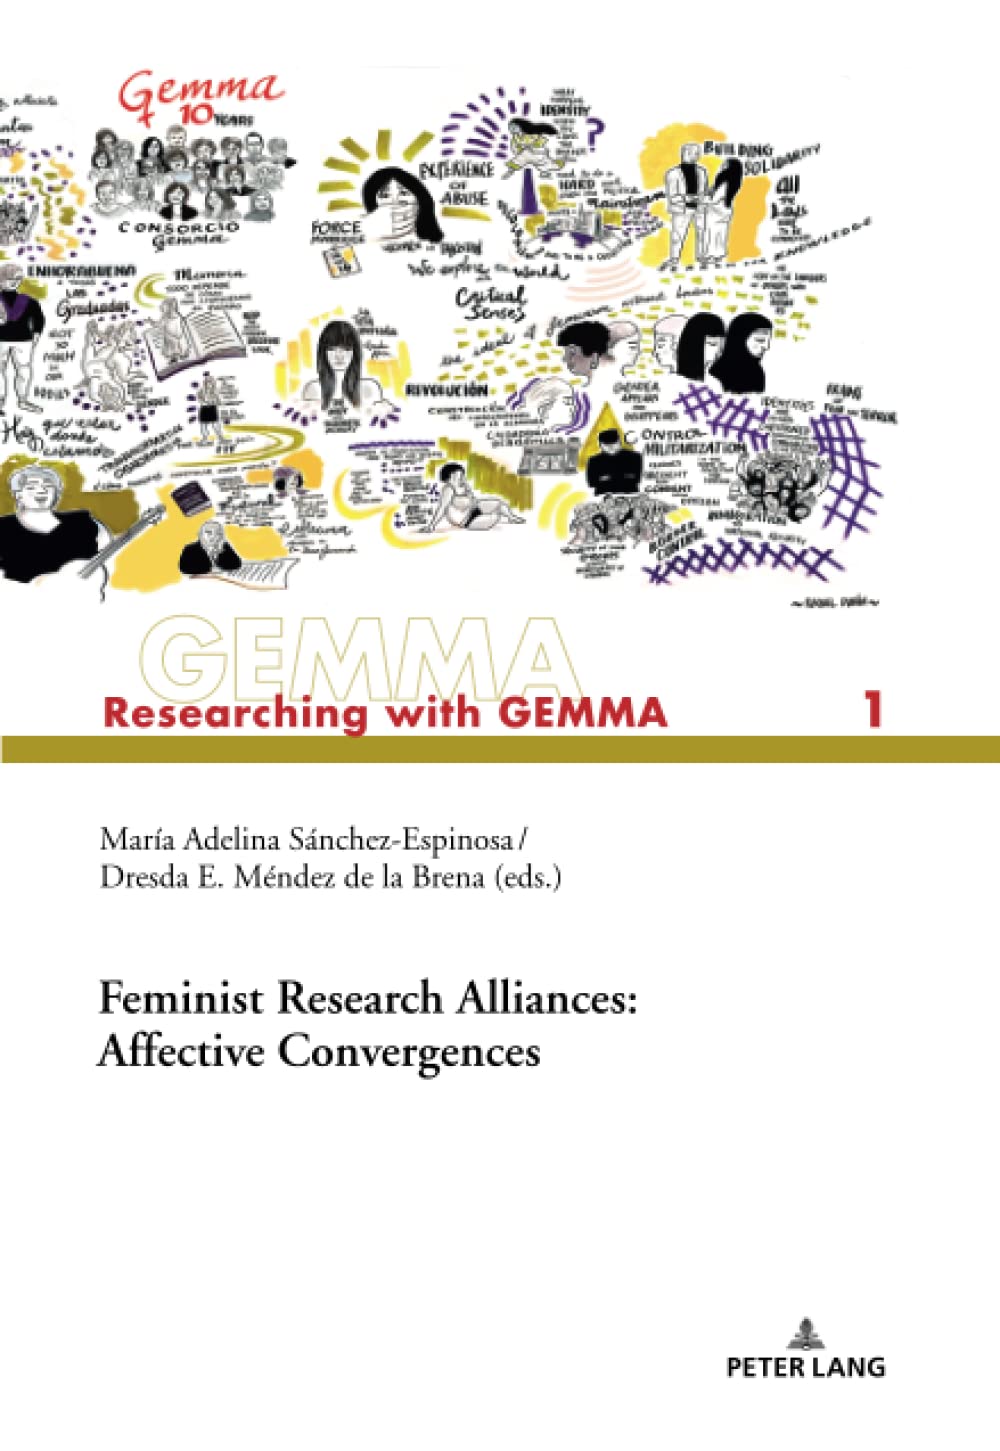 Feminist Research Alliances: Affective Convergences